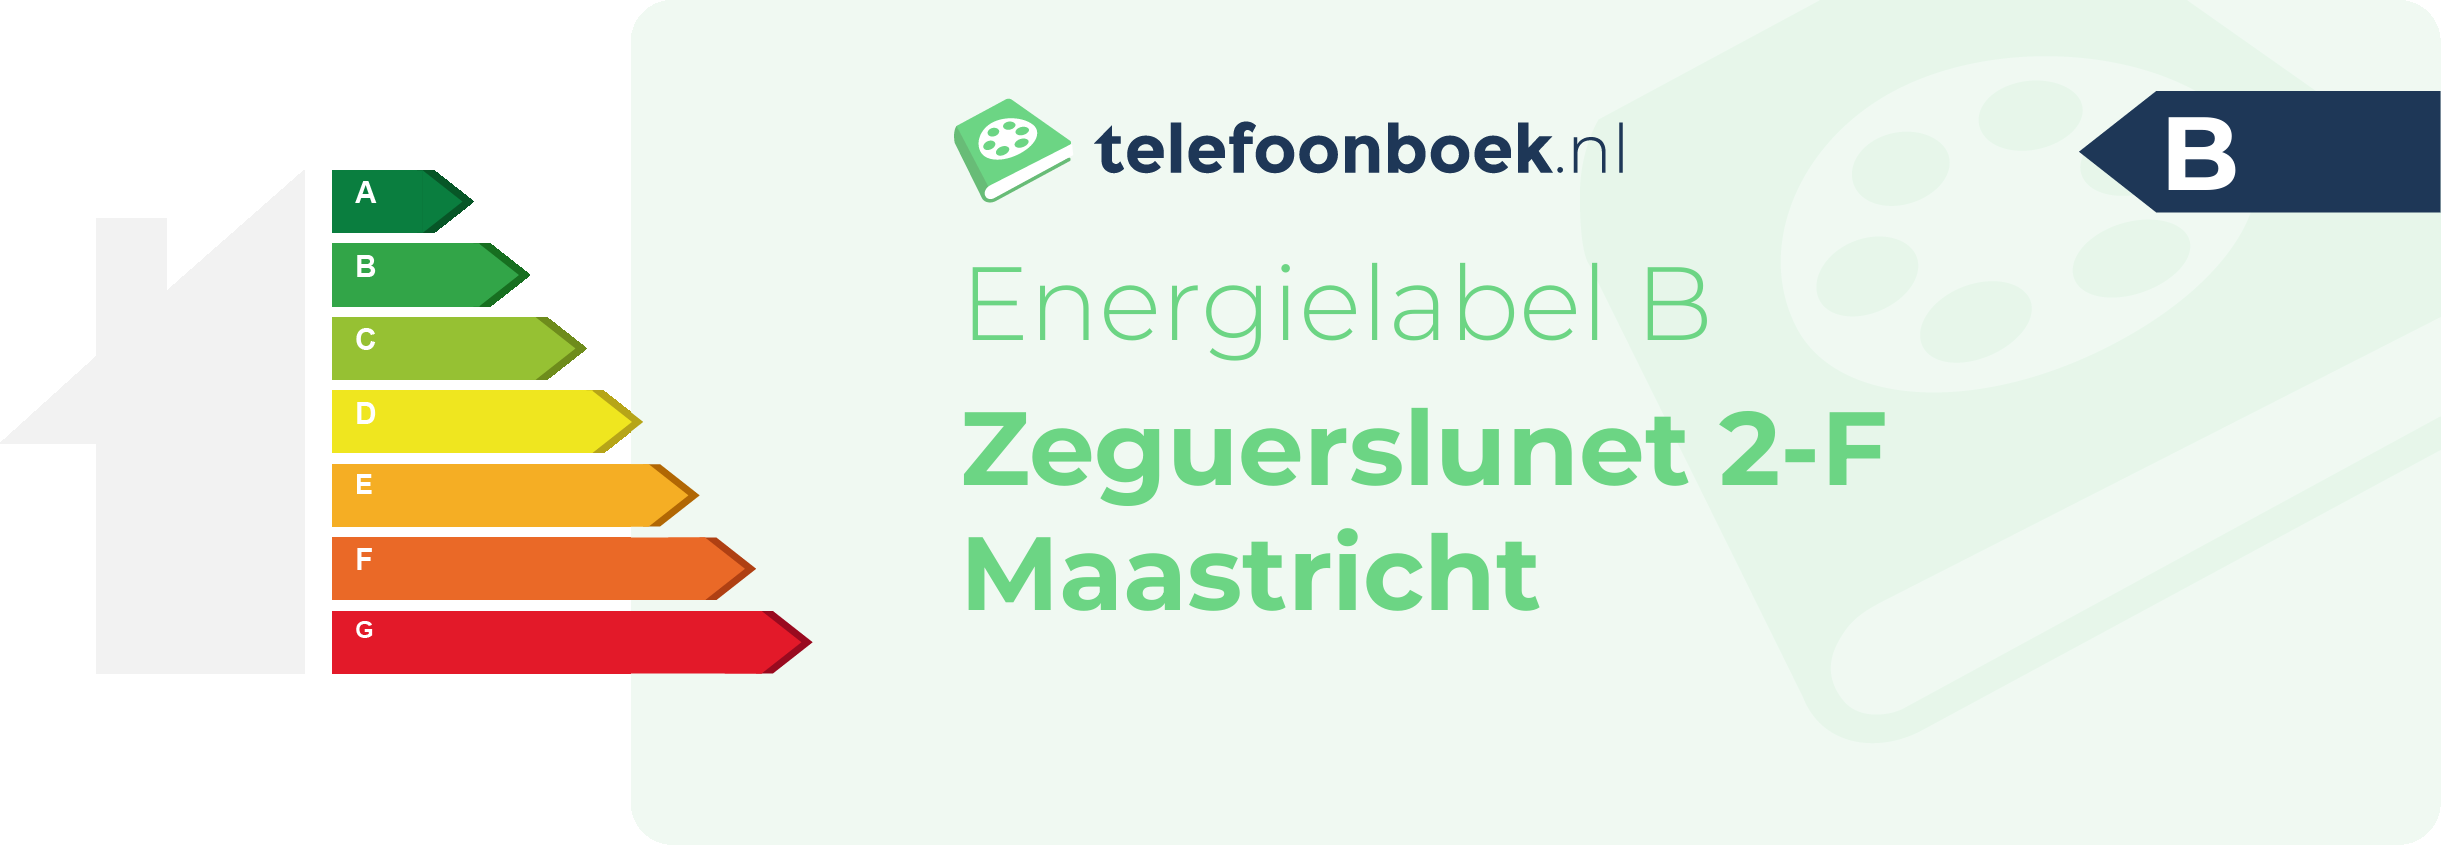 Energielabel Zeguerslunet 2-F Maastricht